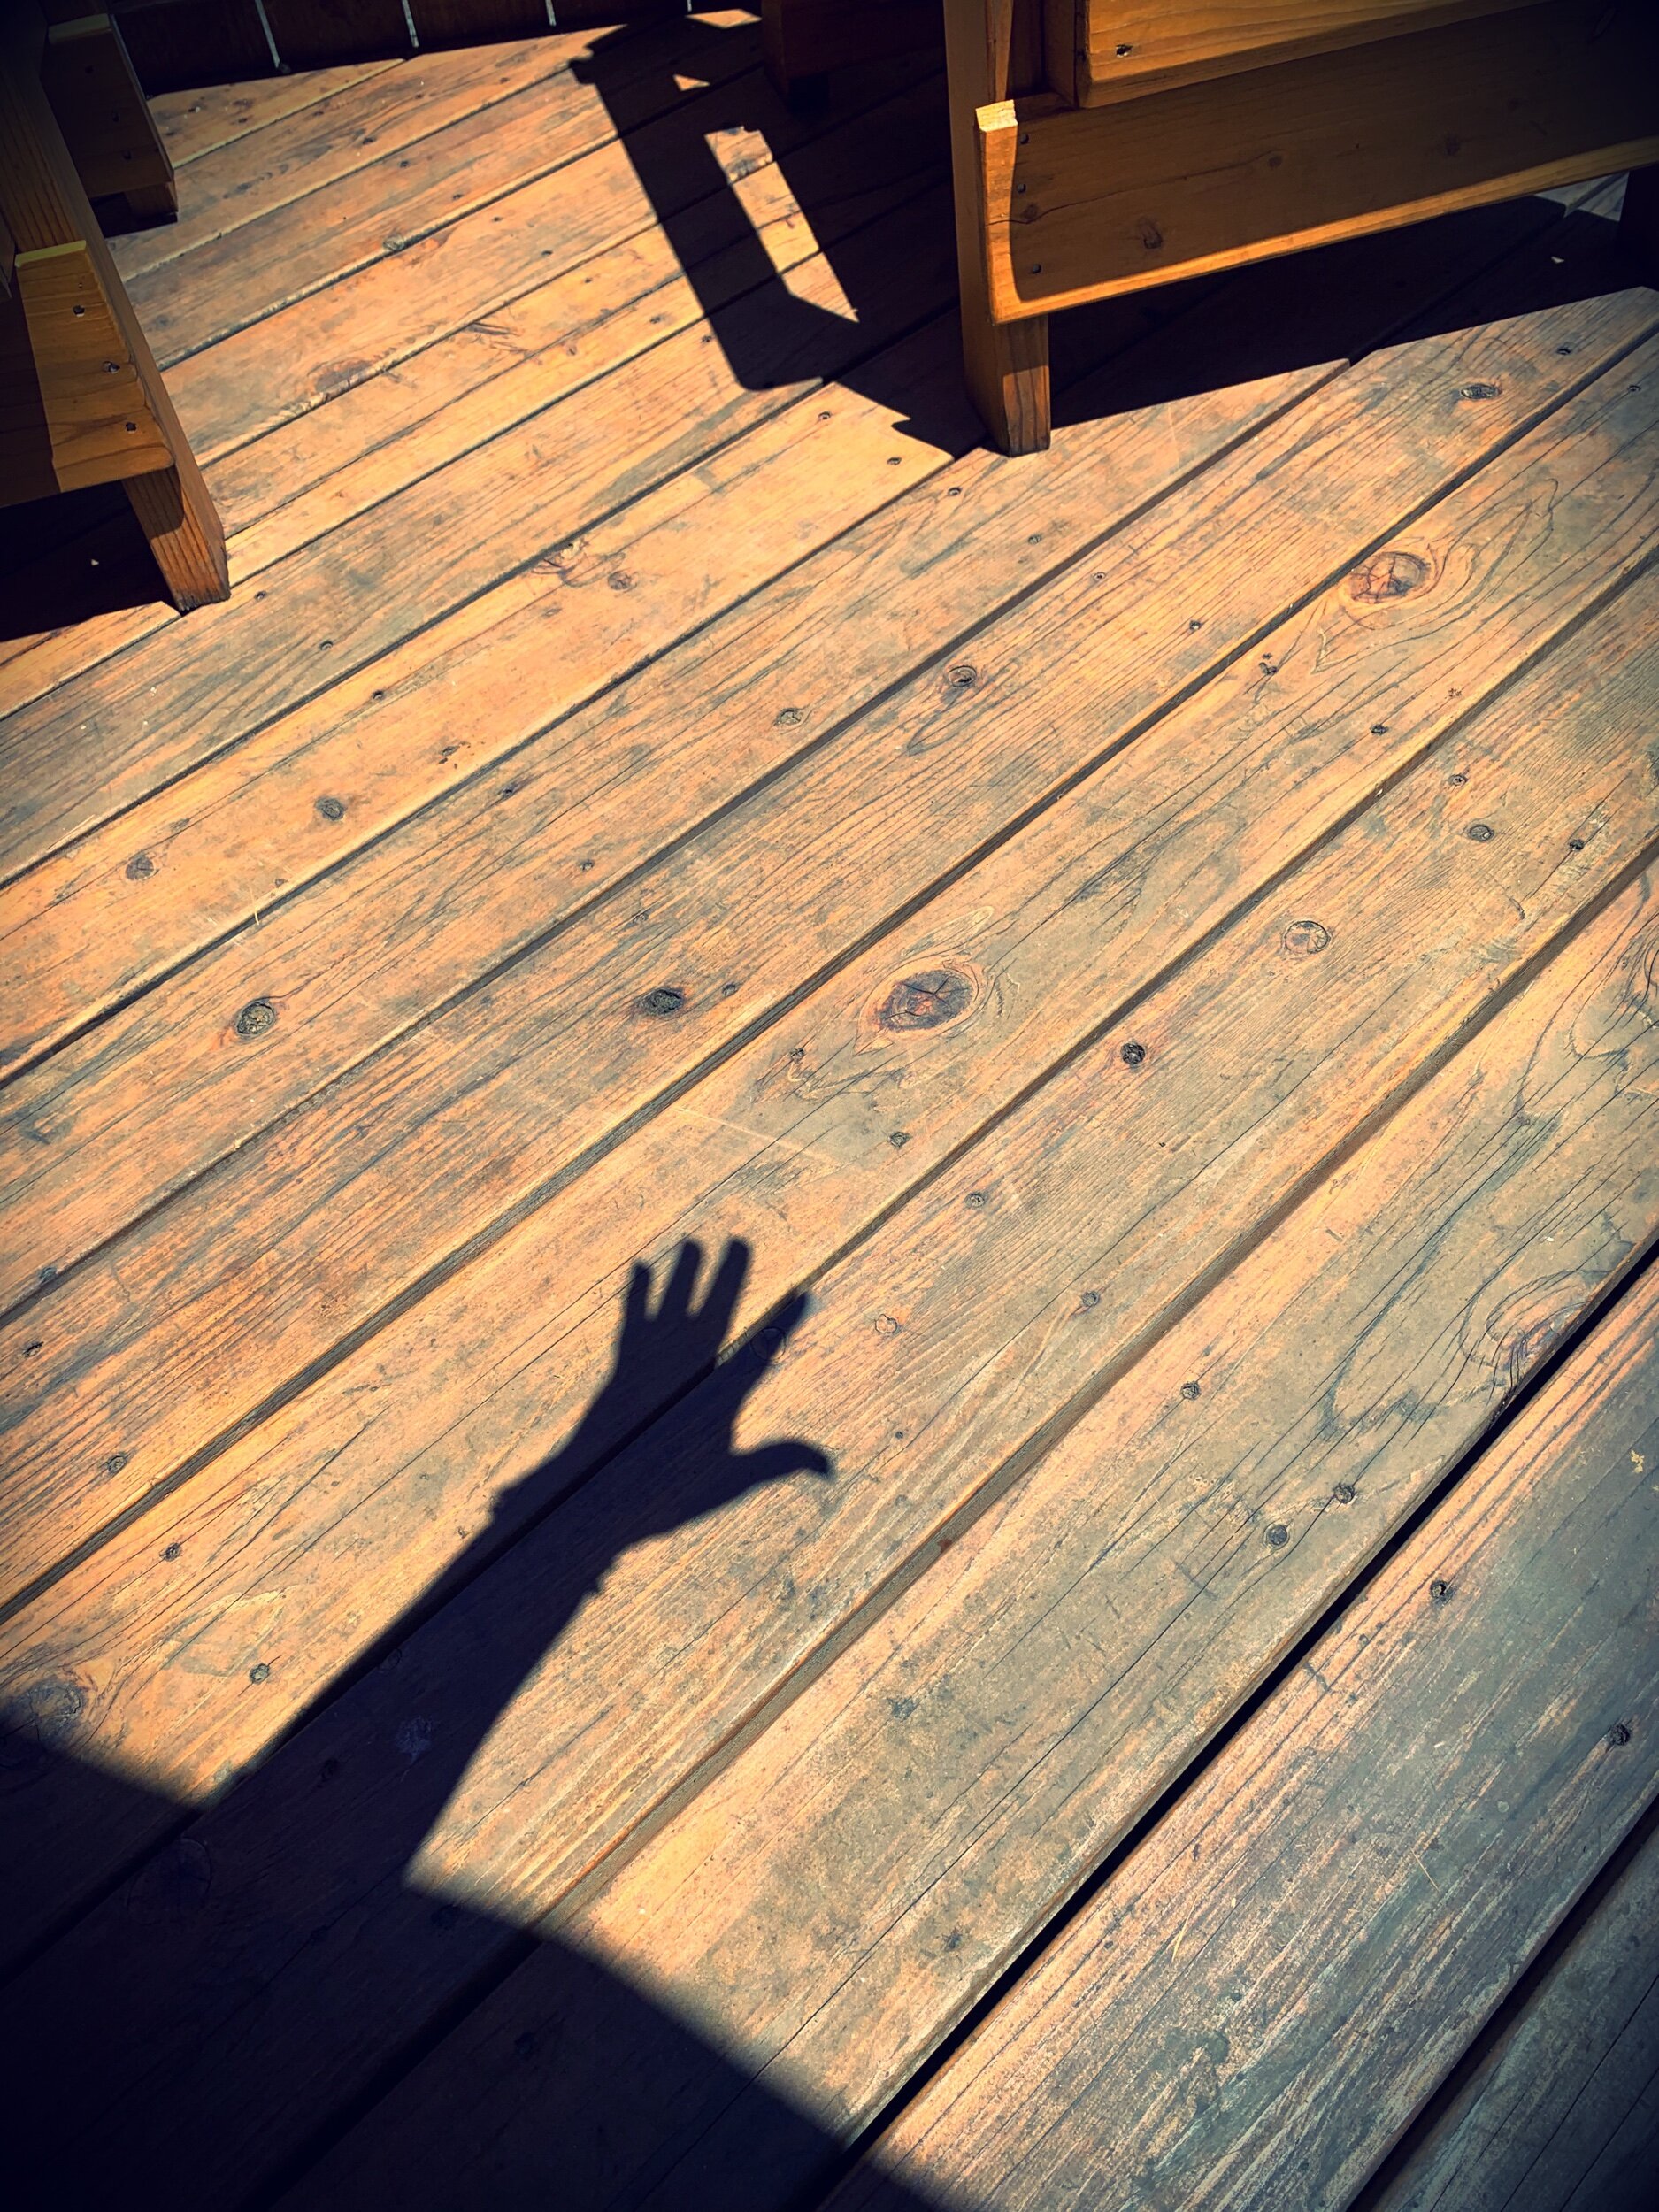 Casting hand shadows 